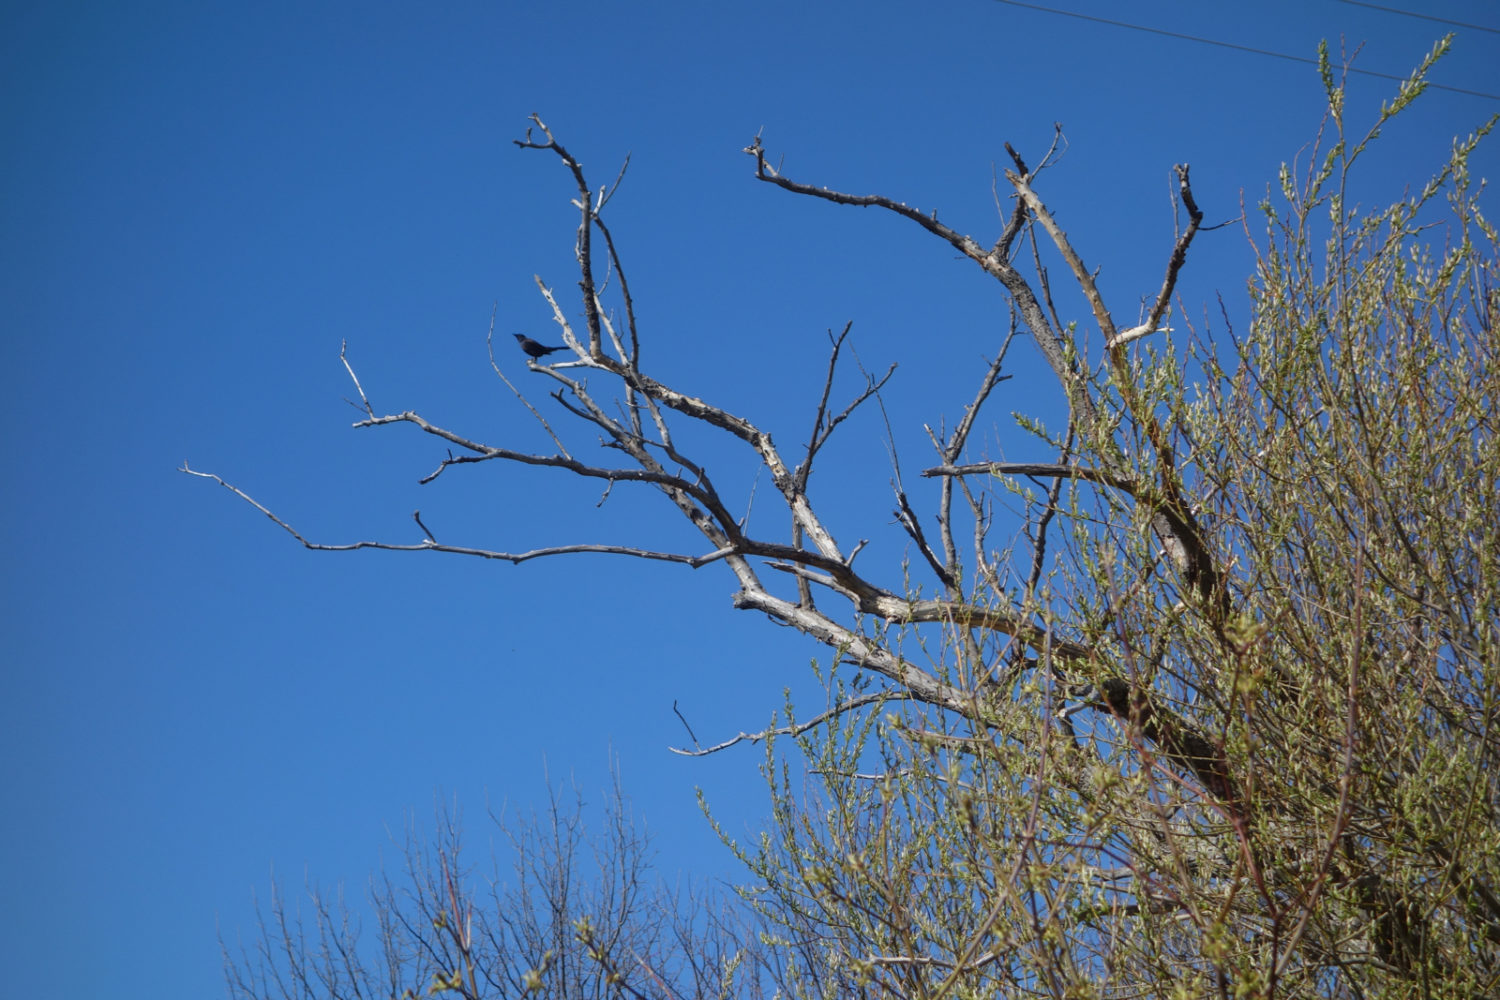 Black bird, blue sky. Hoffman marsh.